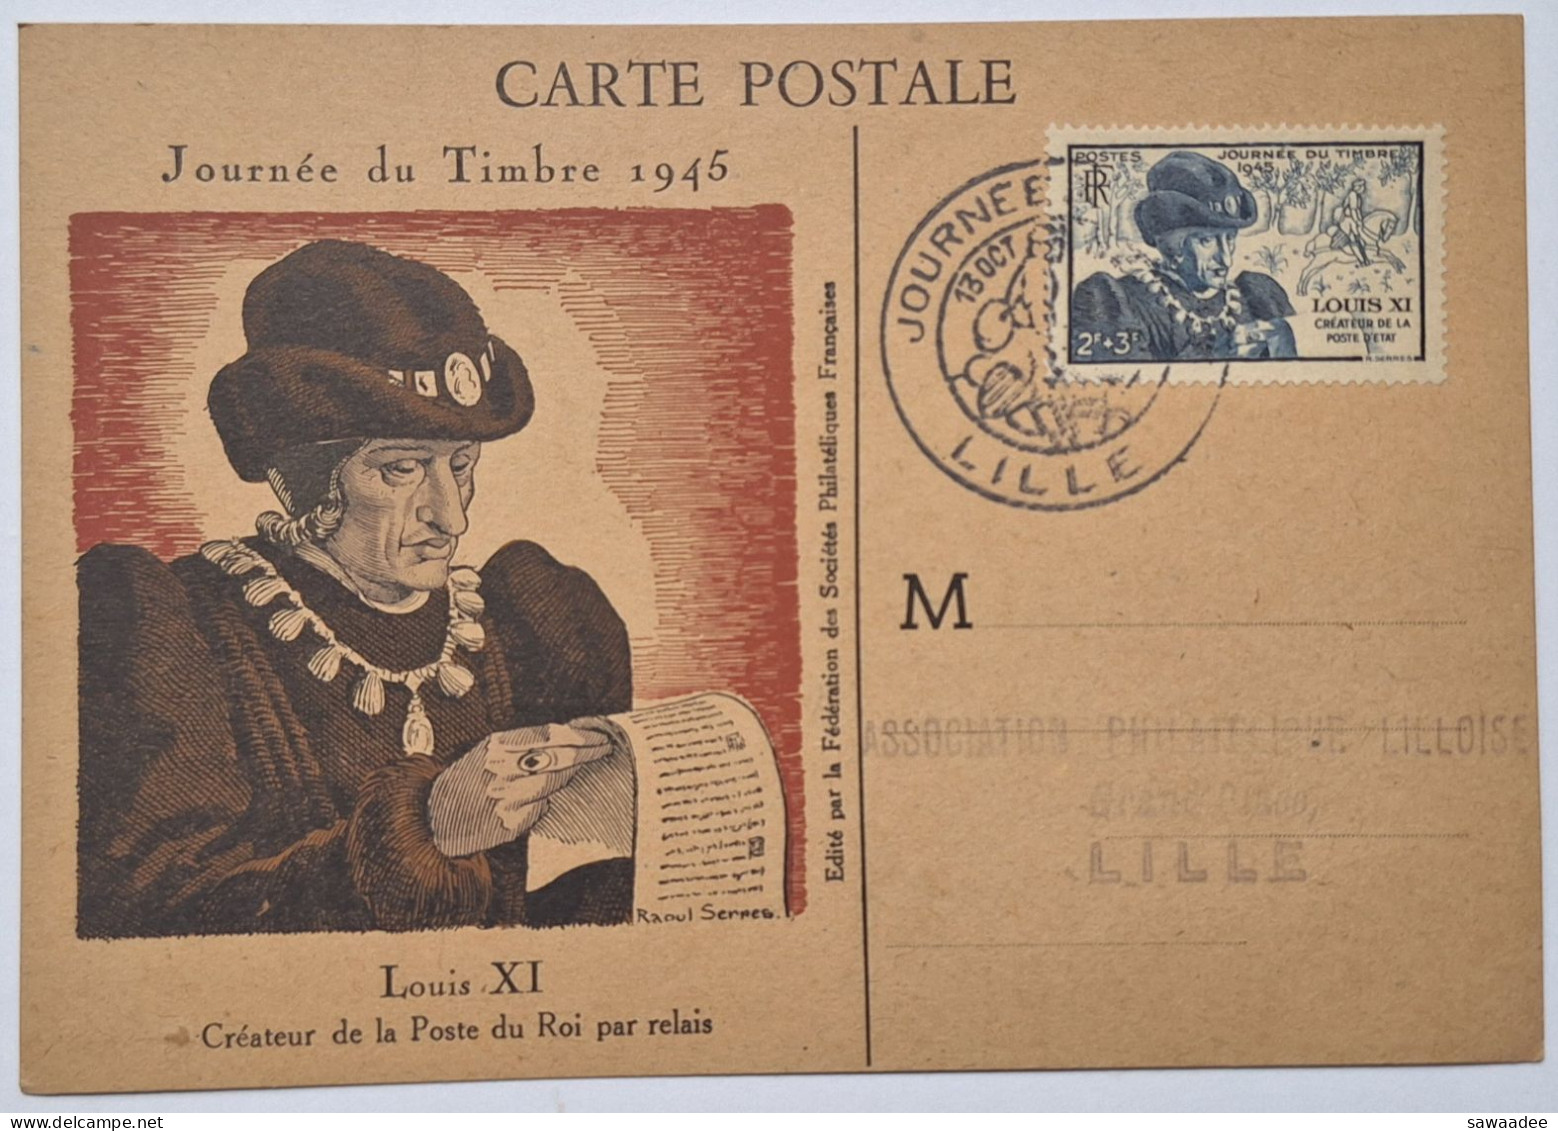 CARTE POSTALE FRANCE - JOURNEE DU TIMBRE 1946 LILLE - LOUIS XI CREATEUR DE LA POSTE DU ROI PAR RELAIS - Postal Services